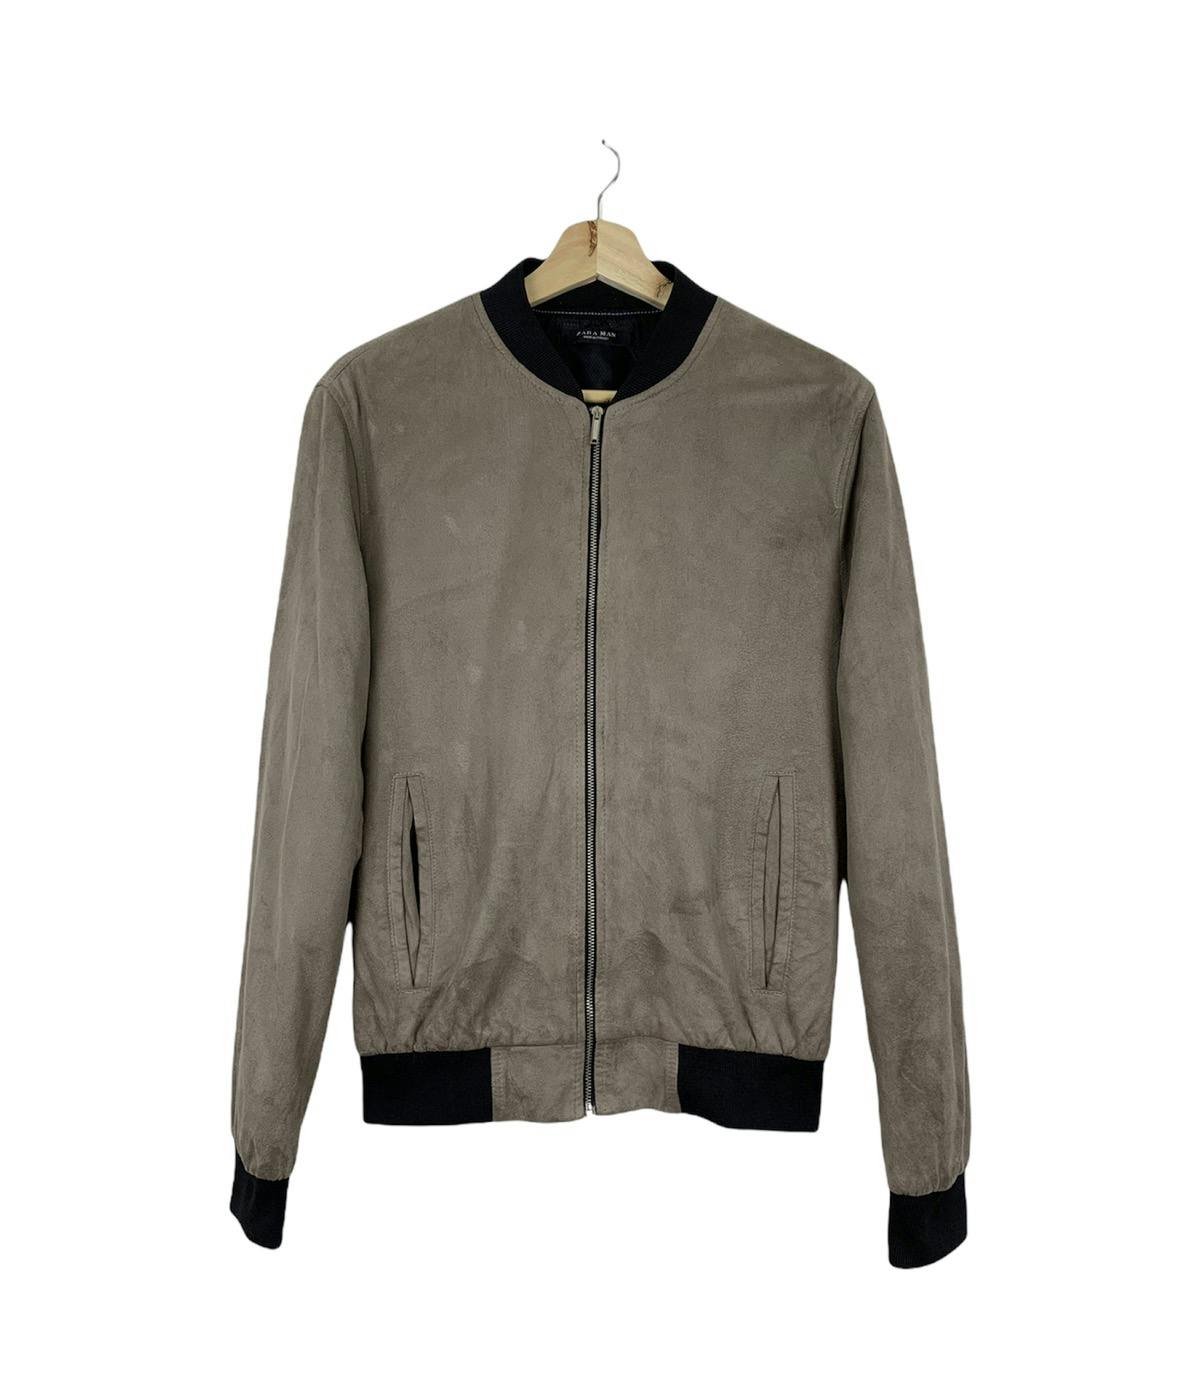 Zara bomber style jacket - 1